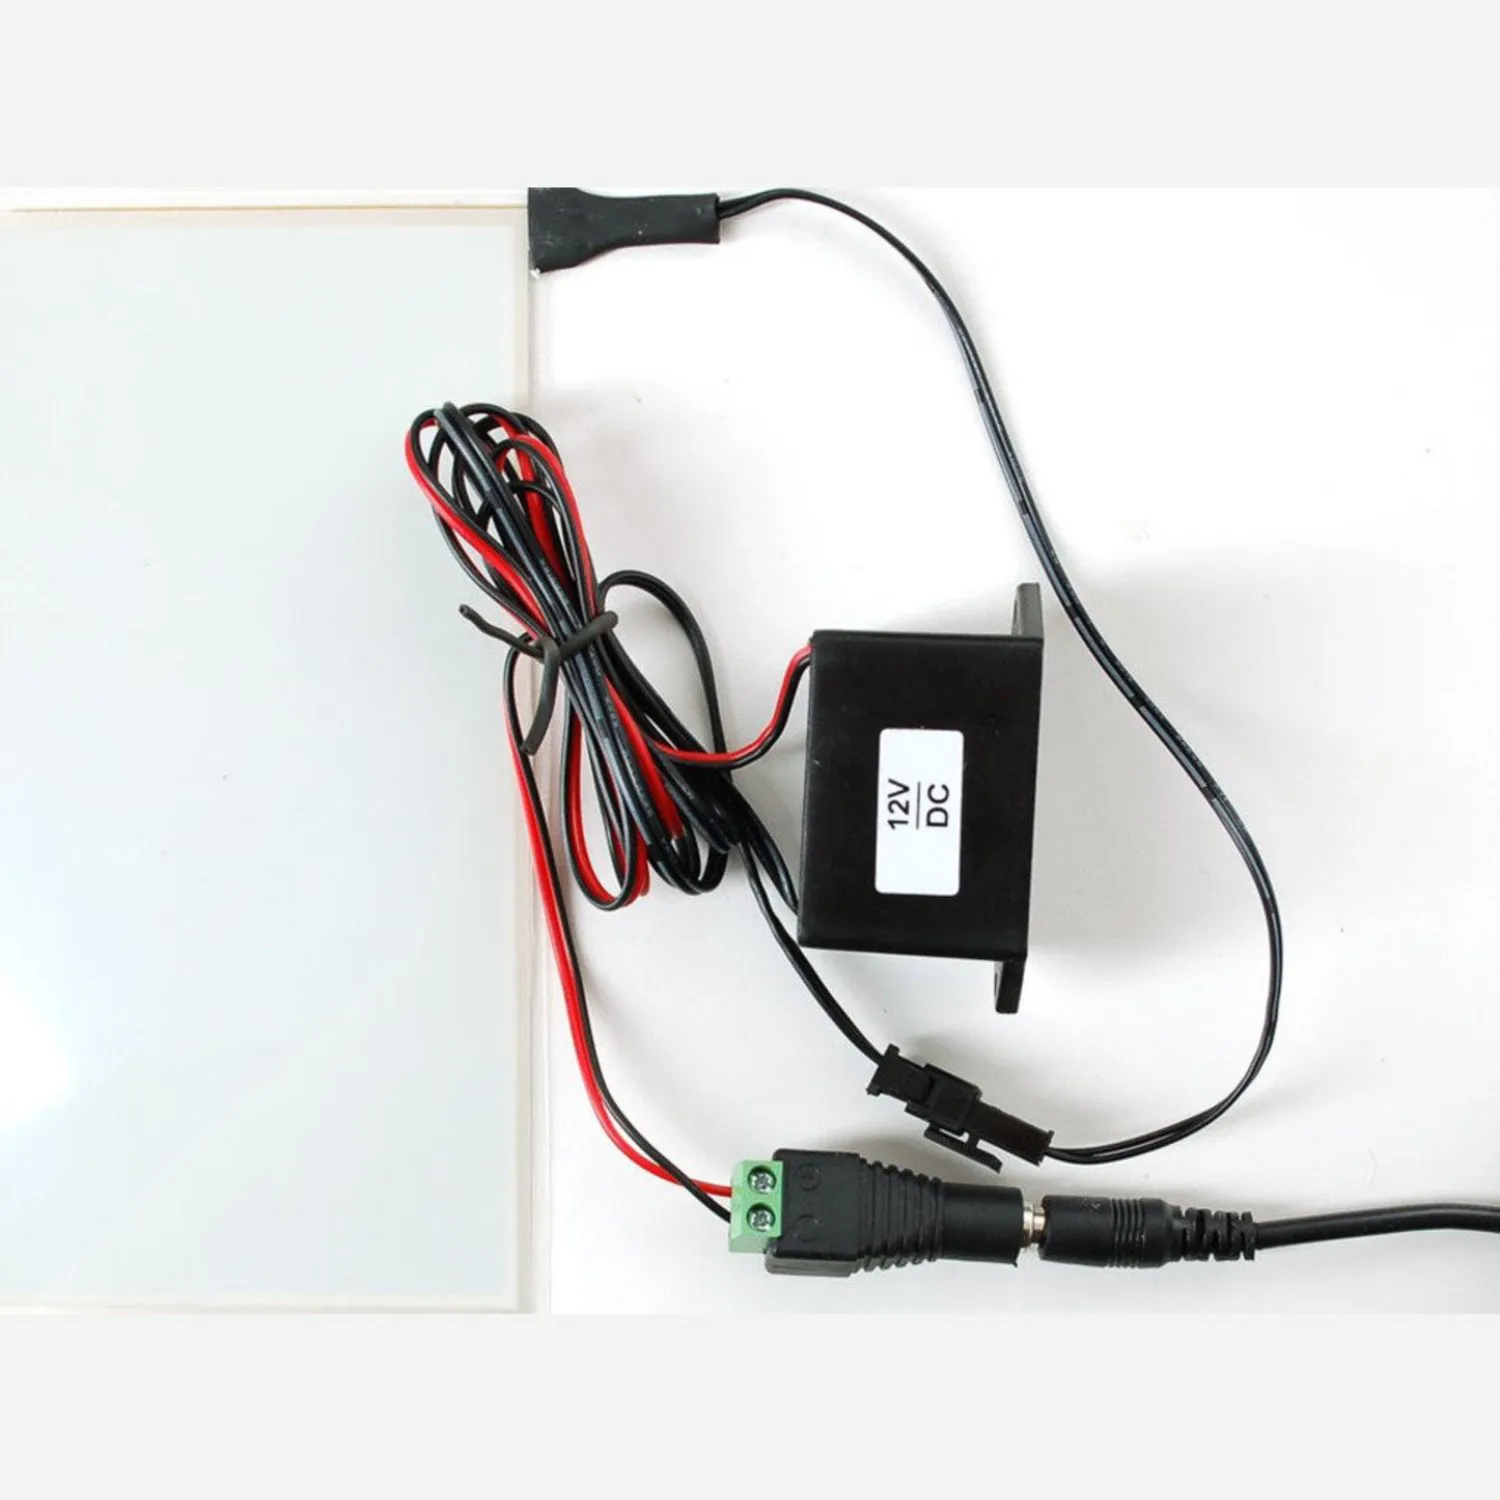 Photo of Electroluminescent (EL) Panel - 20cm x 15cm Aqua